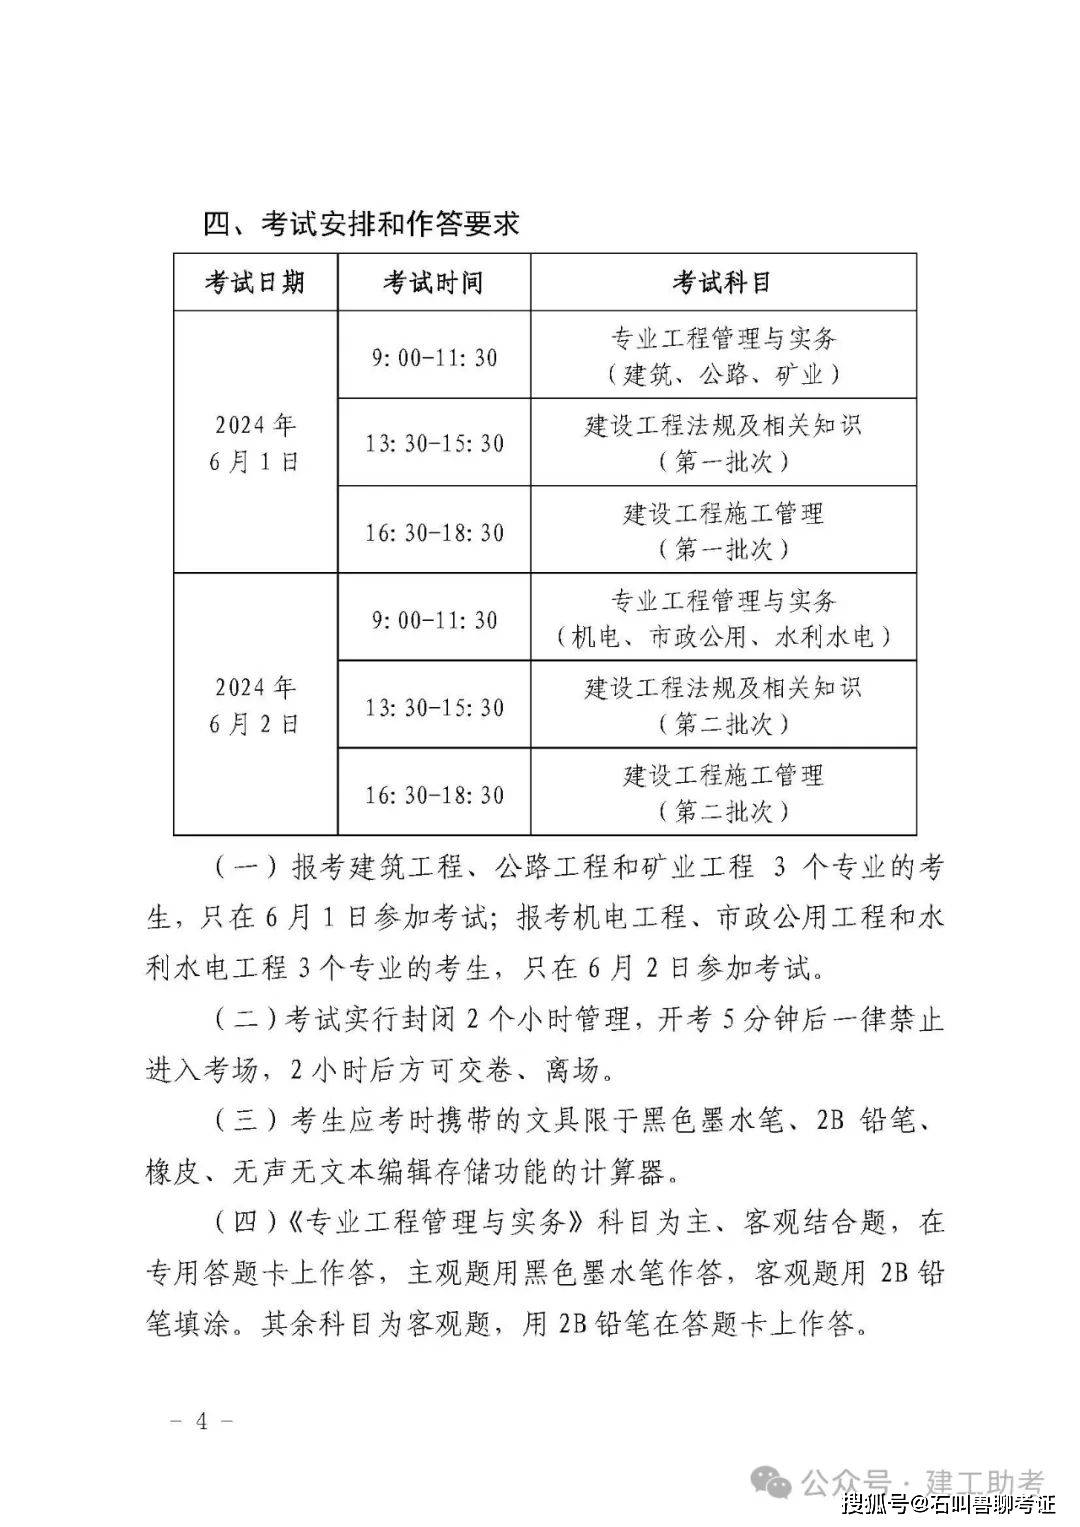 【北京二建】2024年北京二级建造师执业资格考试报名工作通告